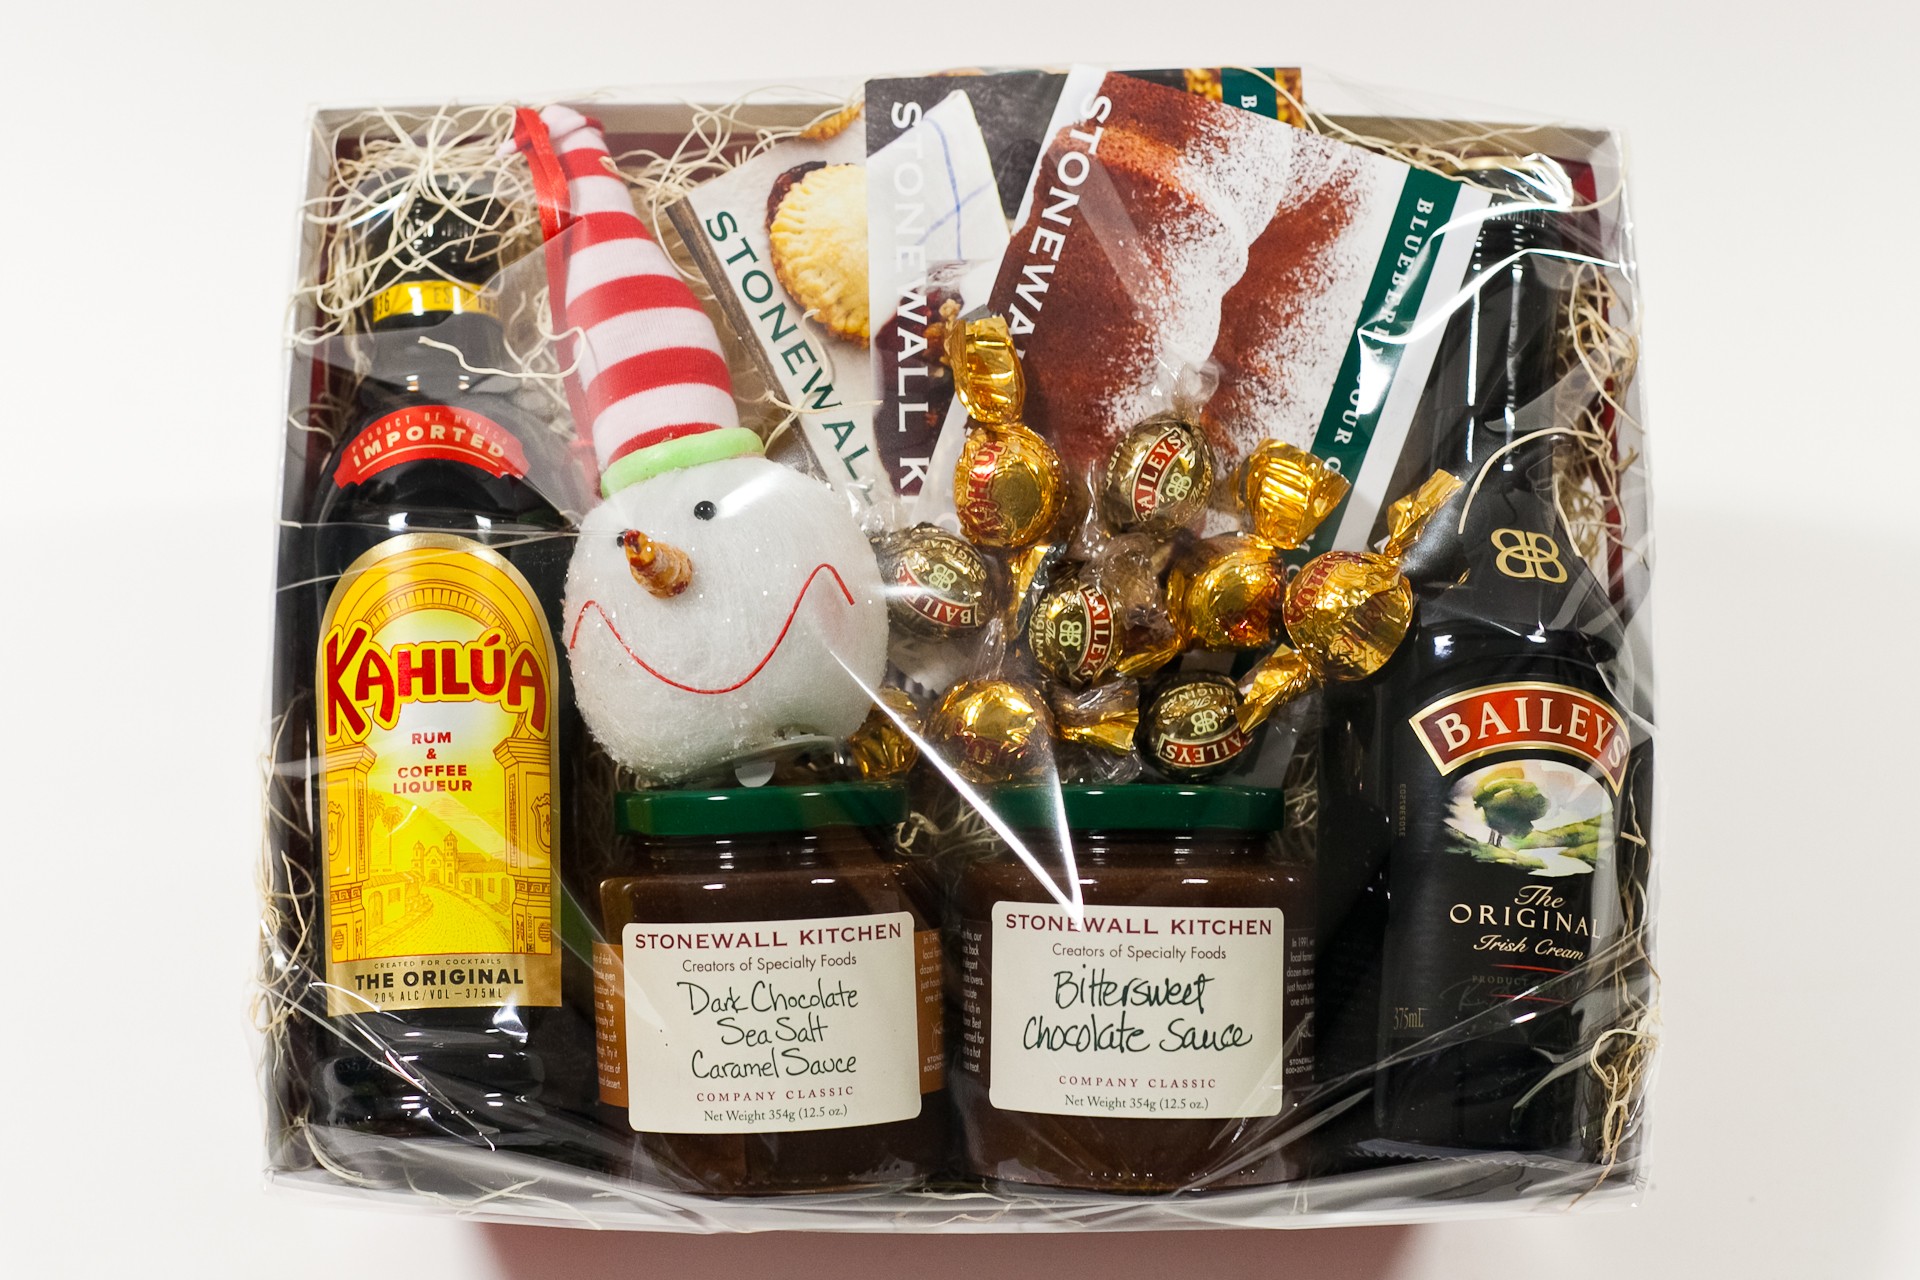 Buy Baileys Irish Cream Liqueur Gift Basket Online!